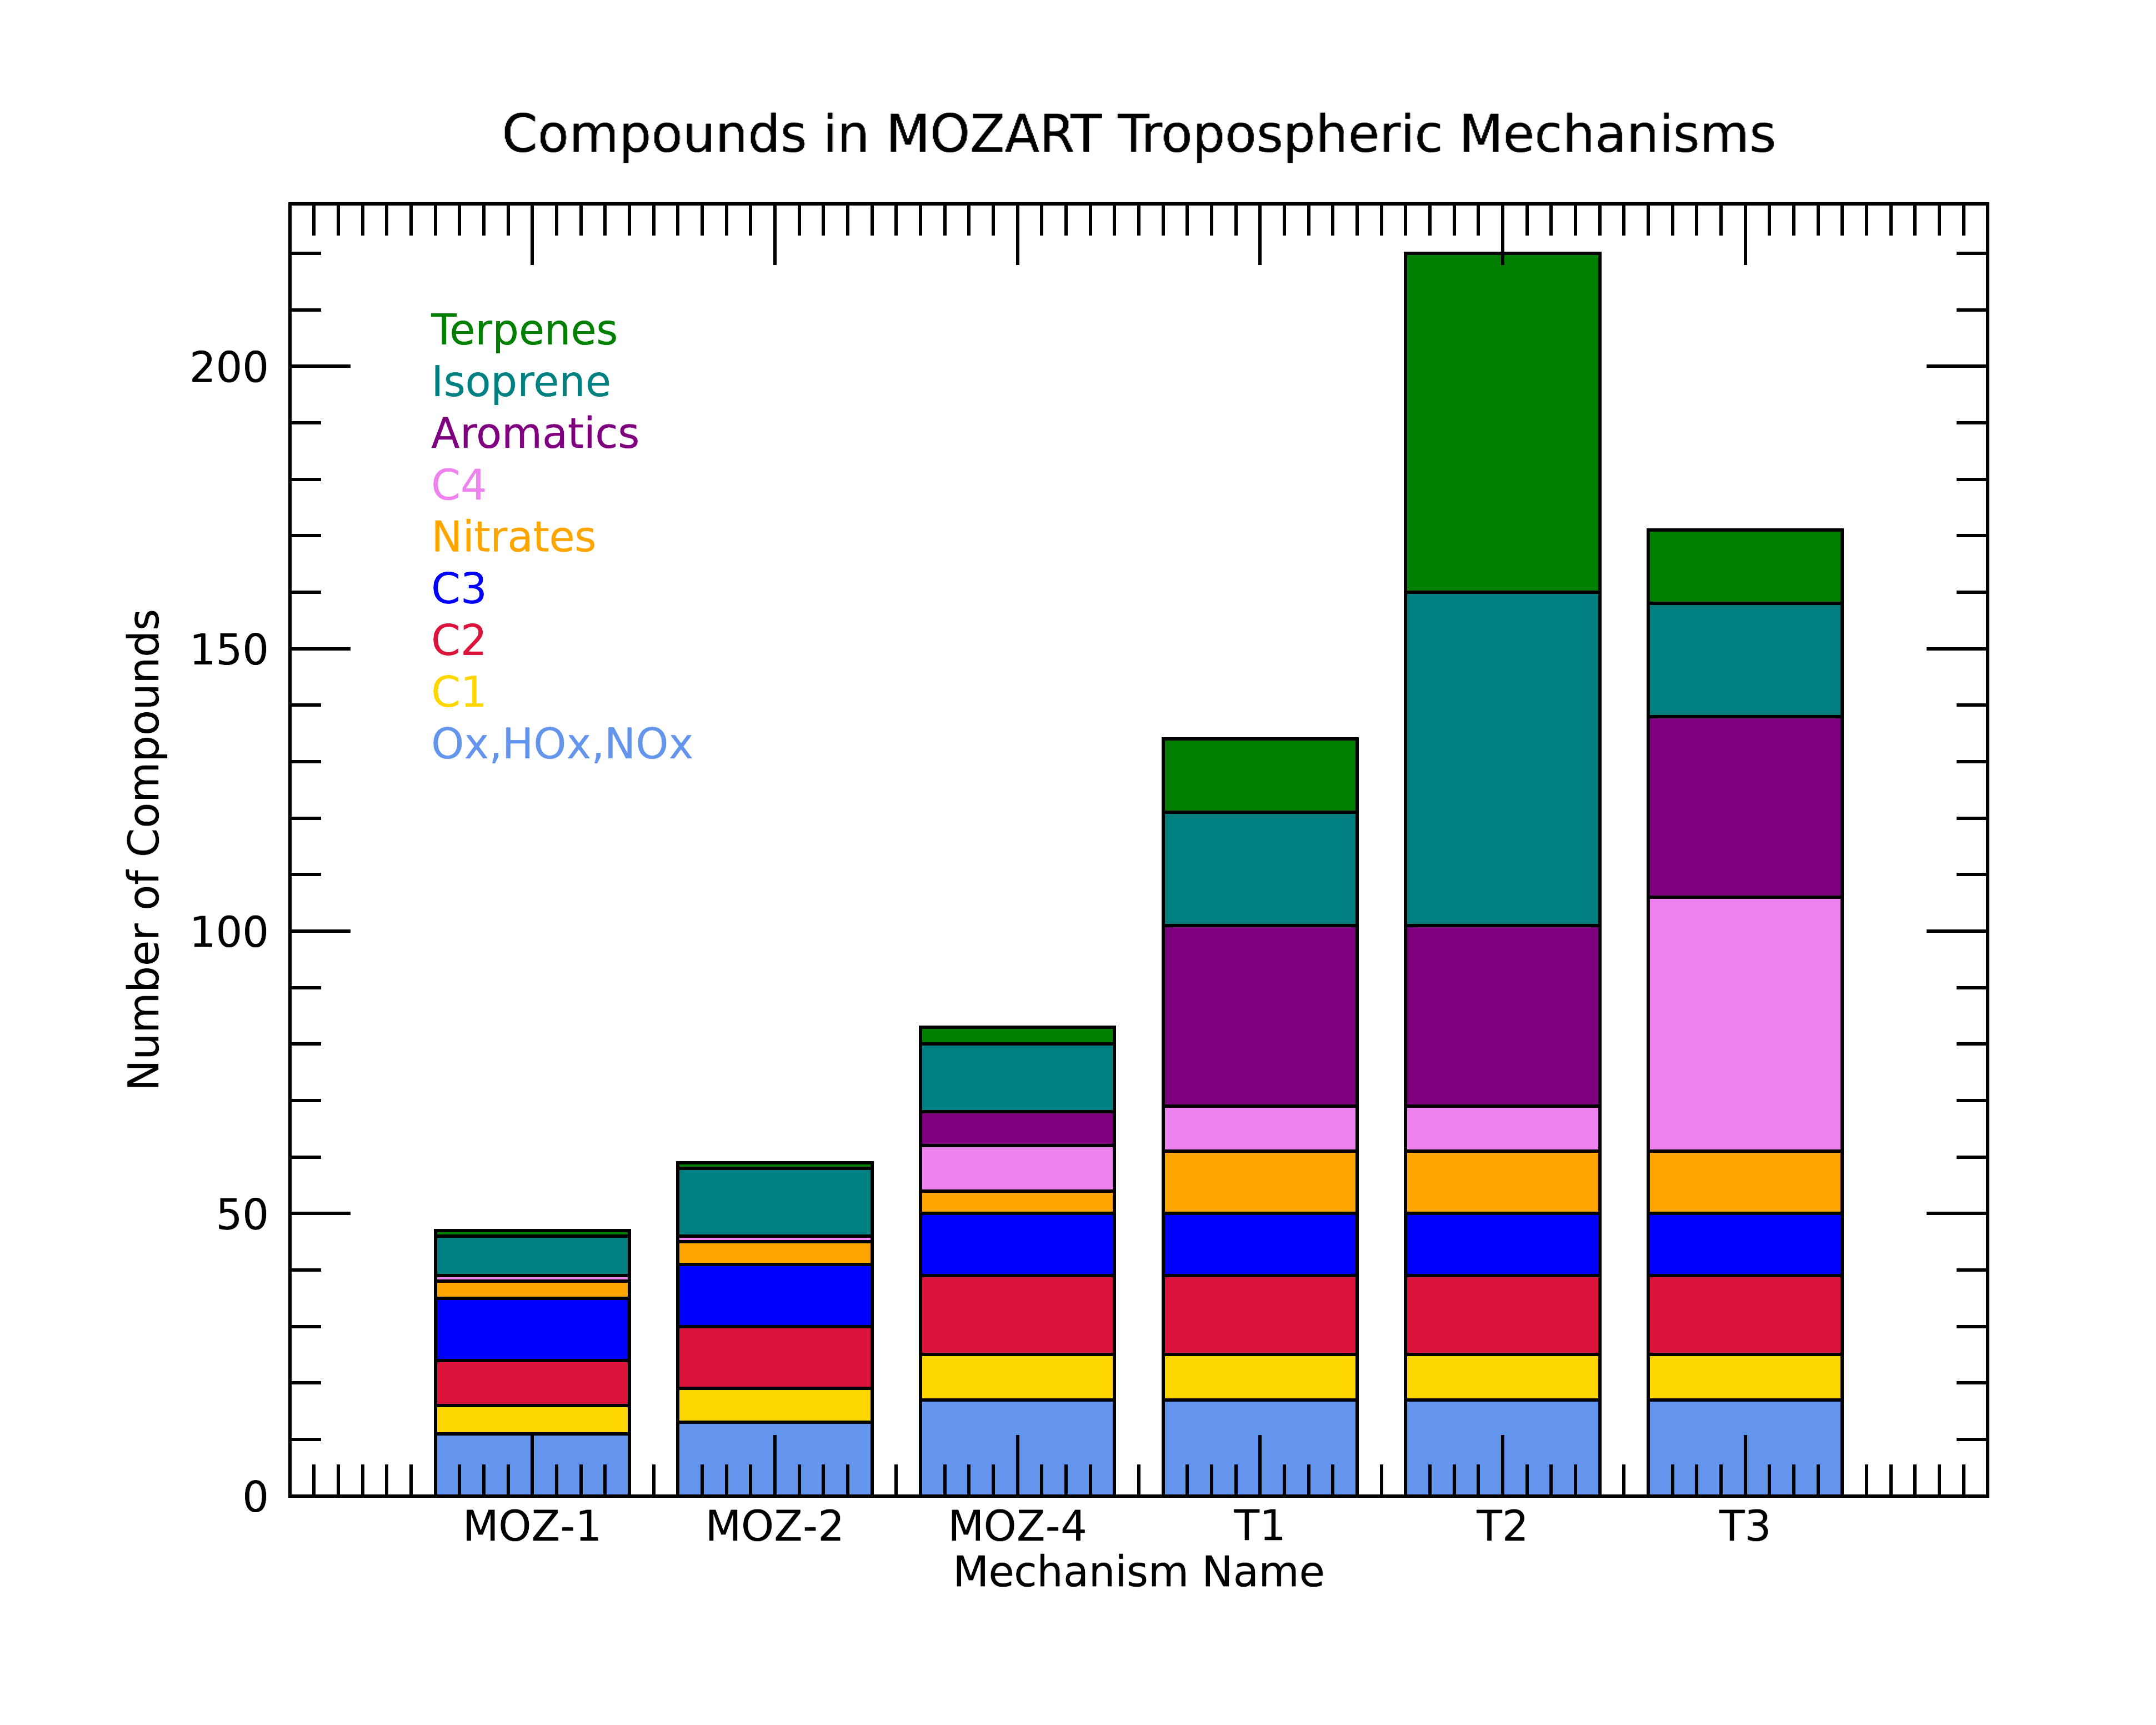 bar chart of MOZART mechanisms